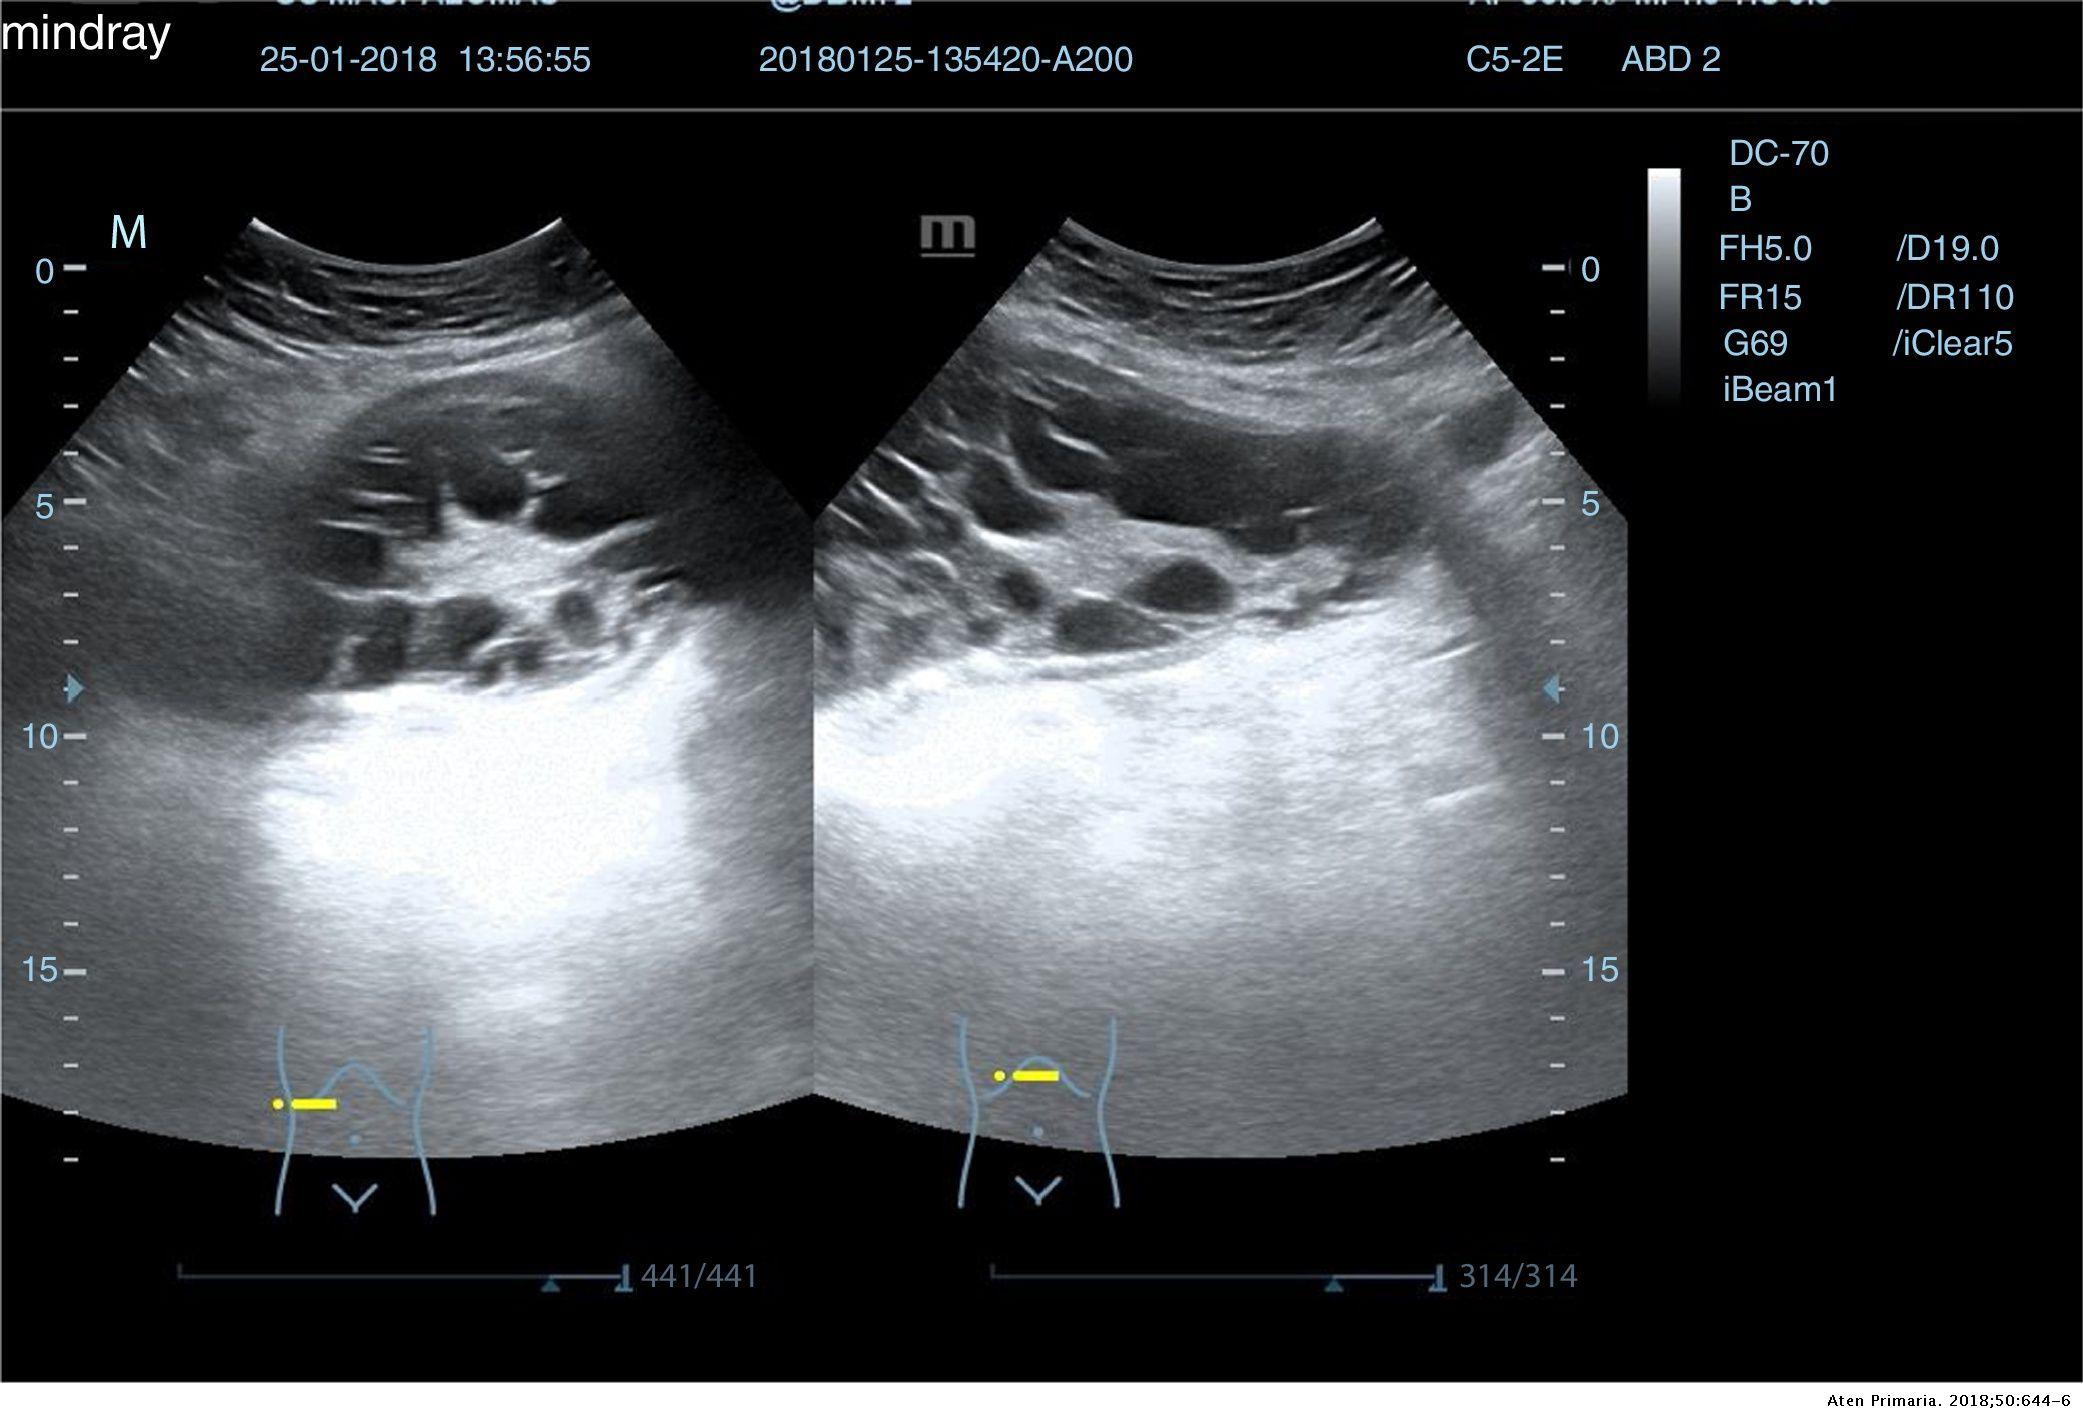 La importancia de la ecografía abdominal en el manejo de tumoraciones  abdomino/pélvicas en atención primaria | Atención Primaria